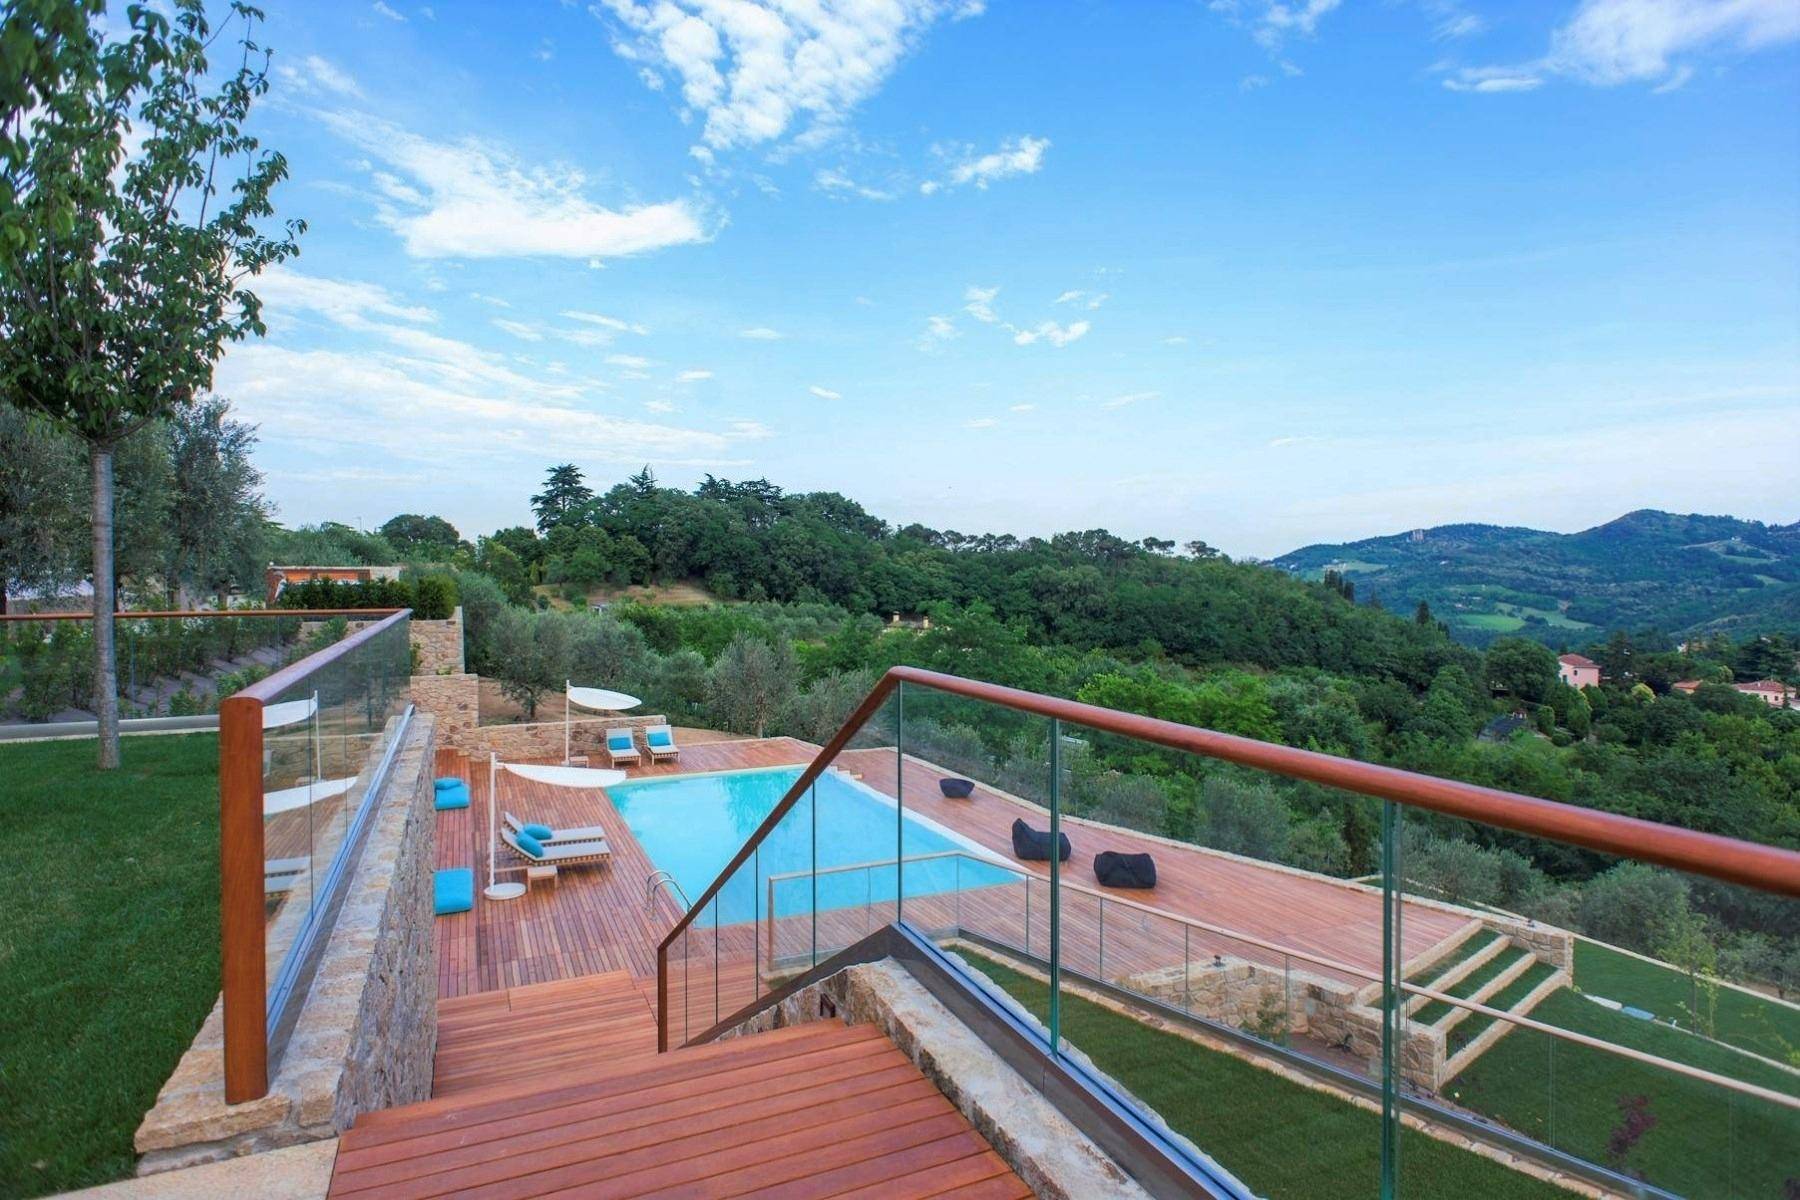 Villa moderna in collina con piscina, eliporto, maneggio e lodge - 10